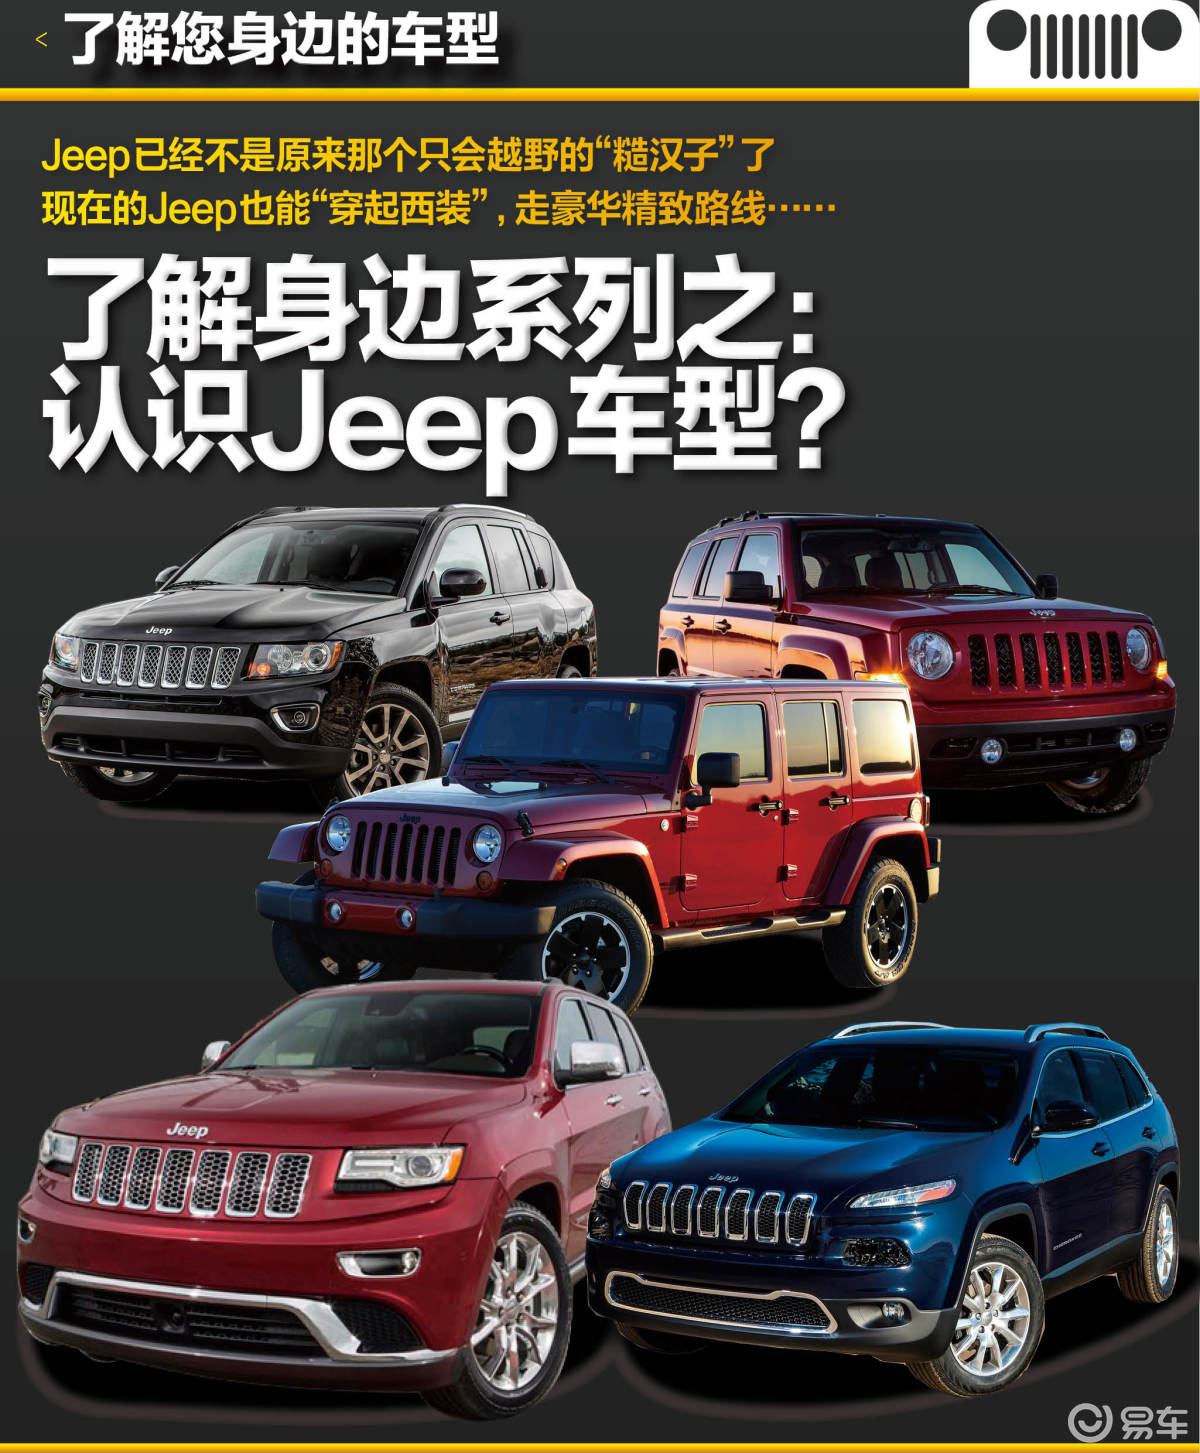 Jeep车型介绍